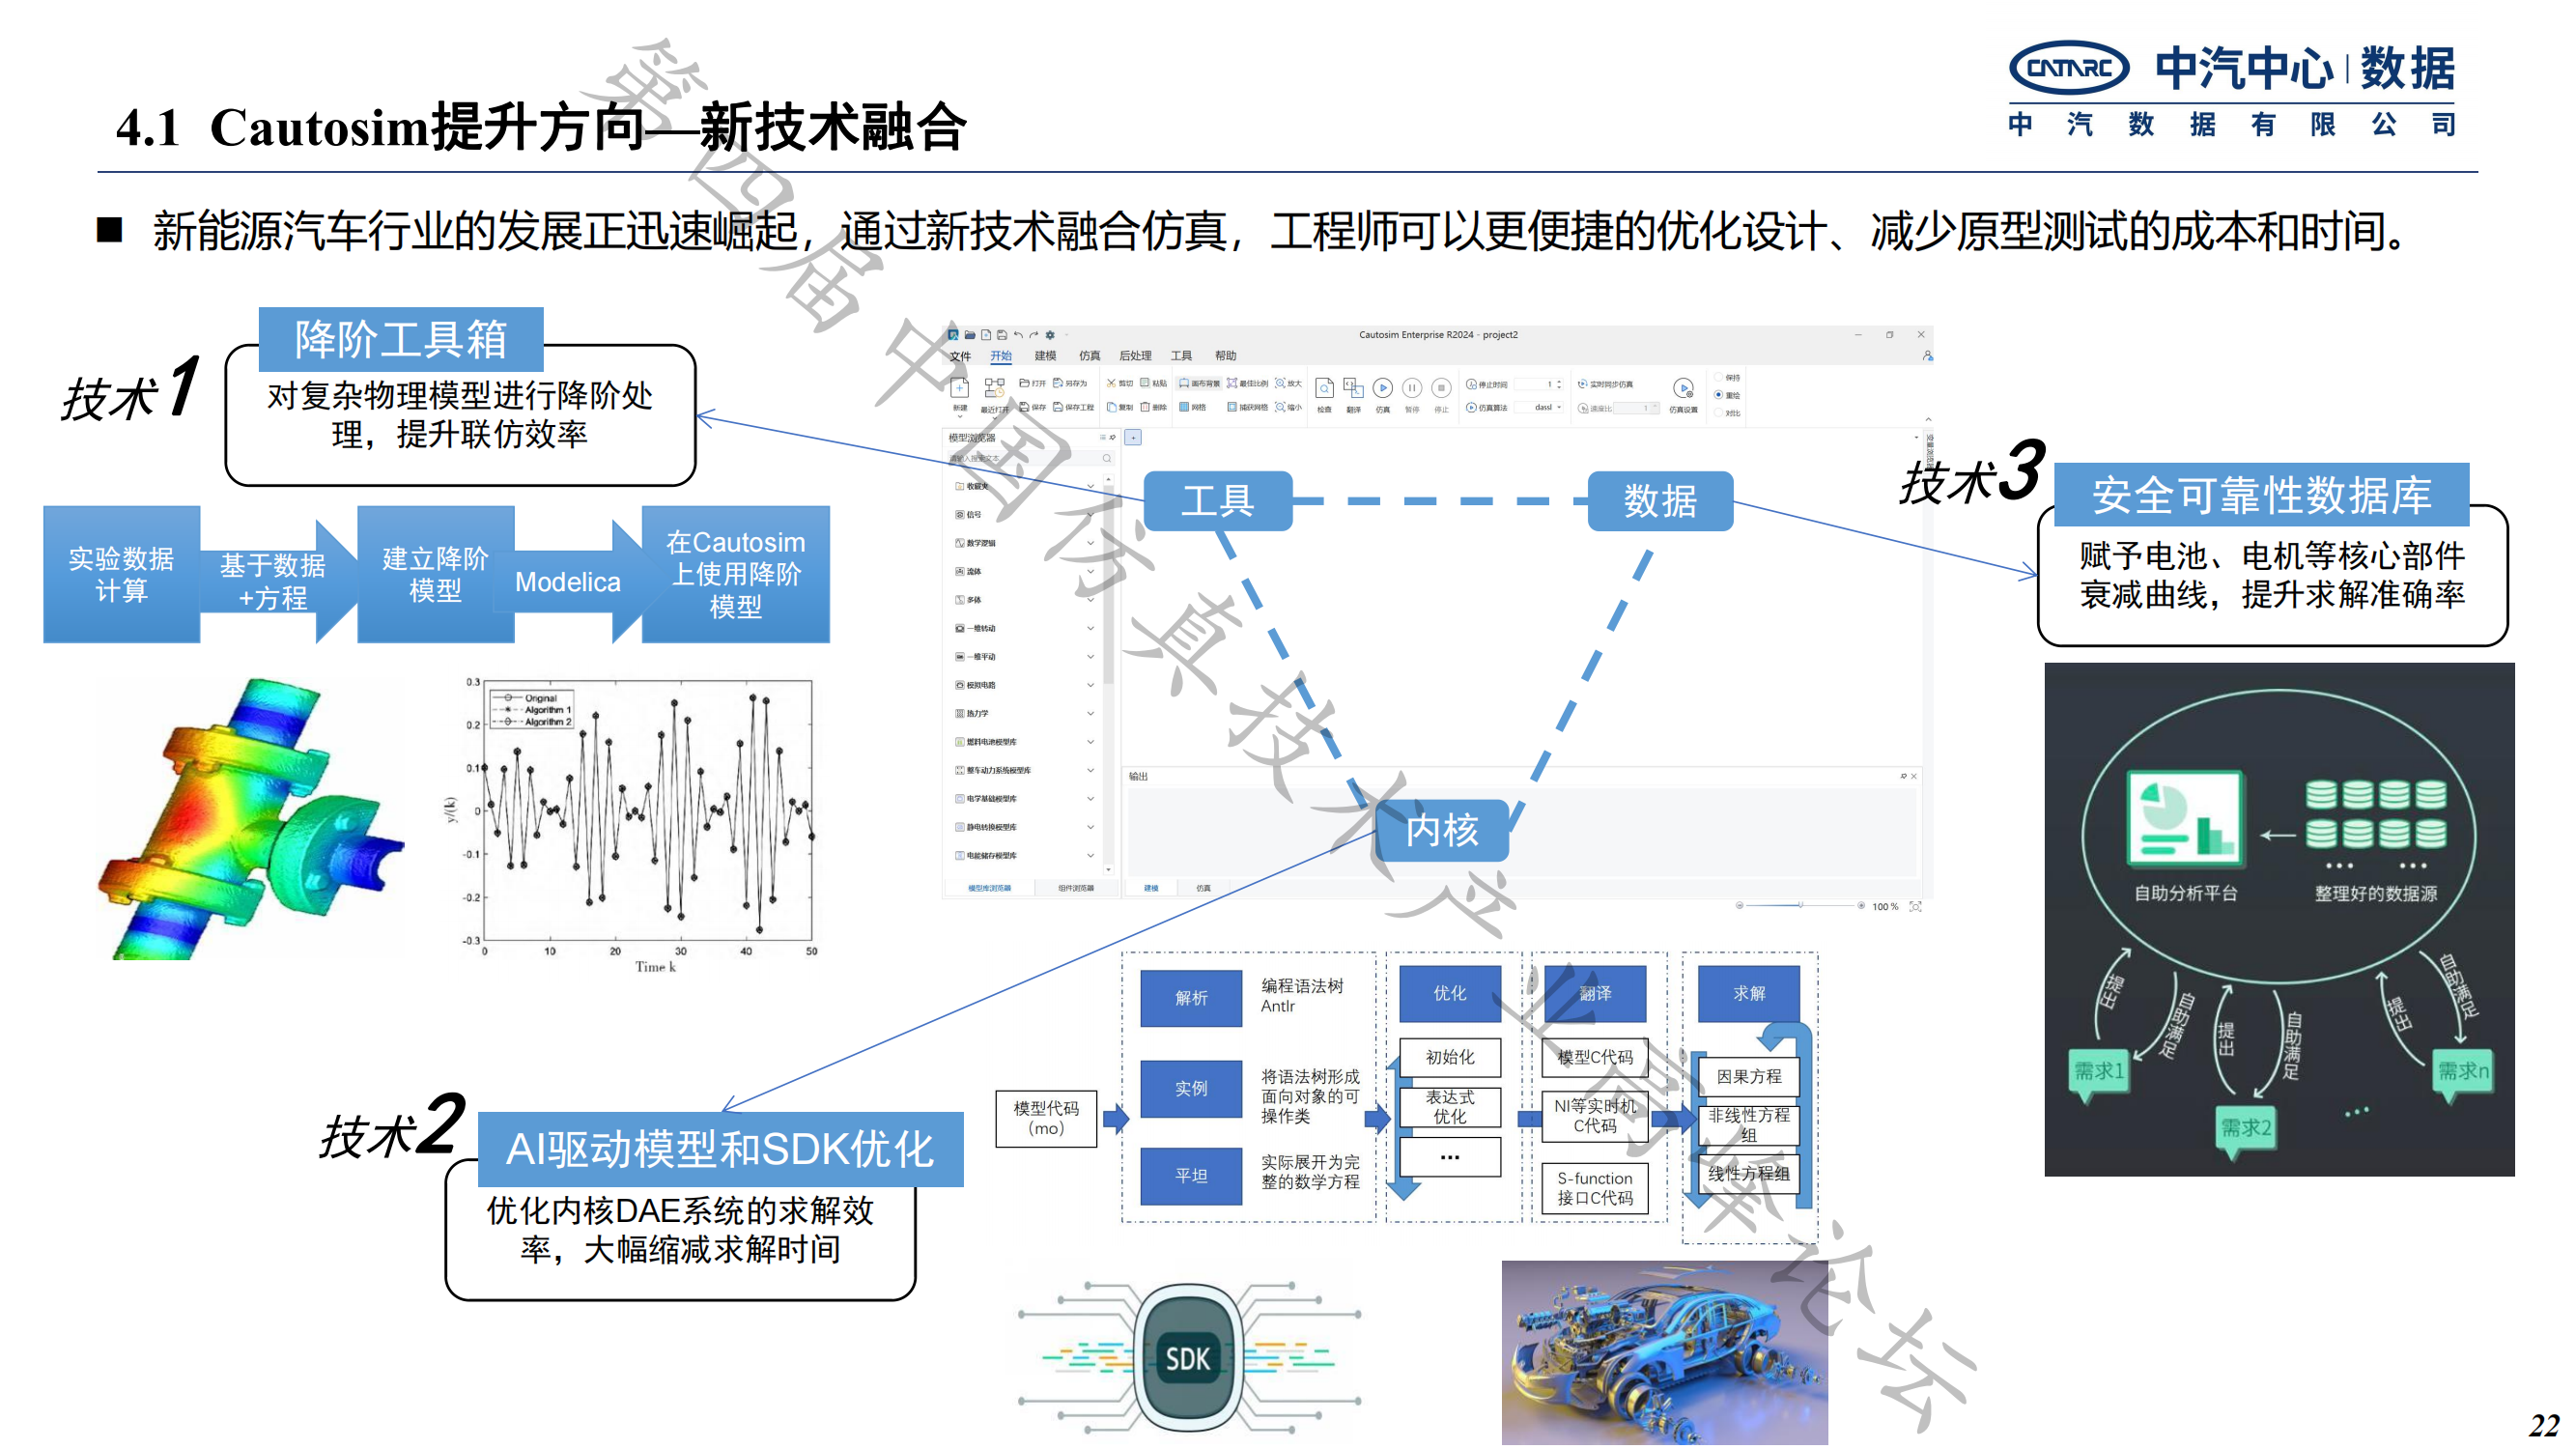 何绍清-国产系统仿真工具在新能源整车研发的应用实践-中汽数据(1)_21.png